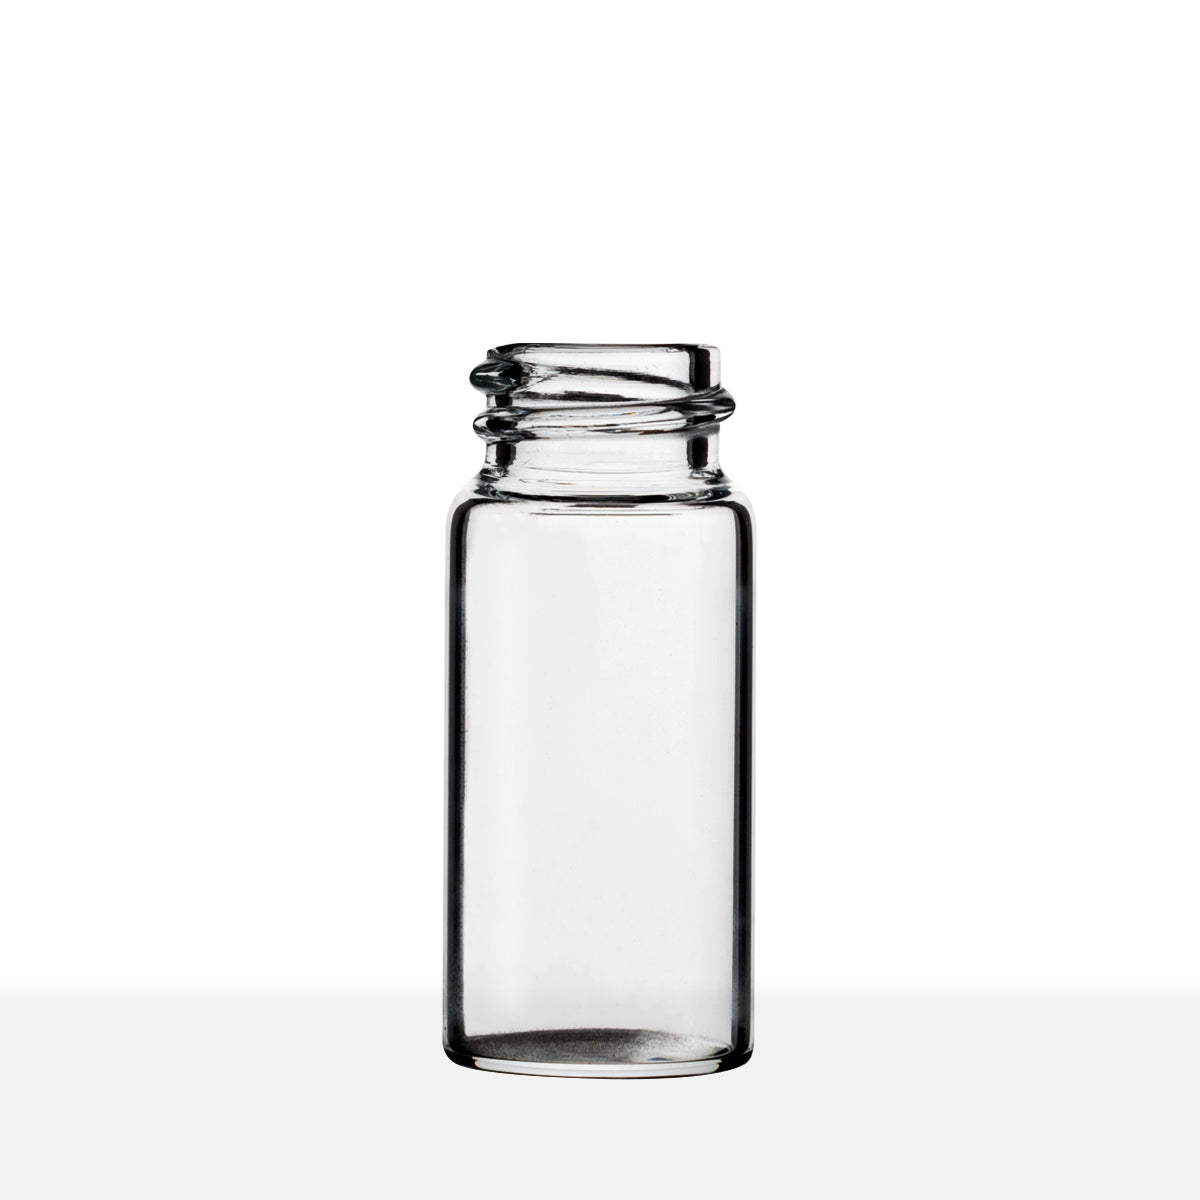 SCREW THREAD GLASS VIALS - CLEAR Item #:VC182147